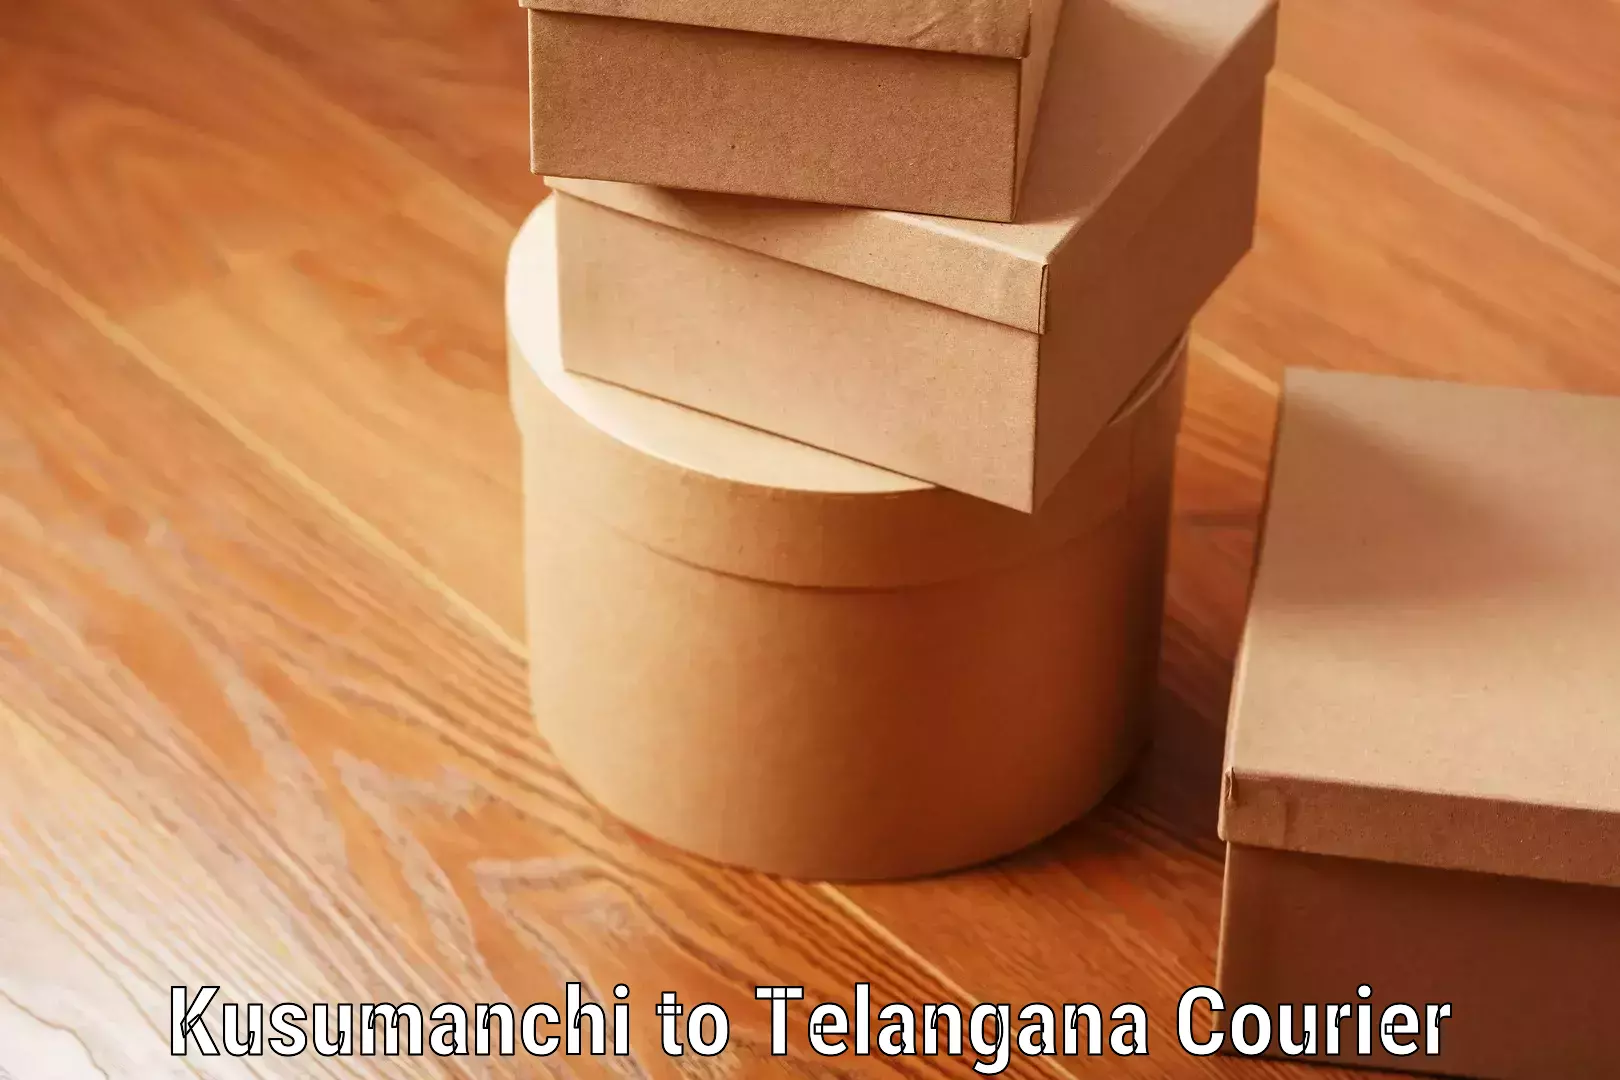 Baggage transport coordination in Kusumanchi to Telangana